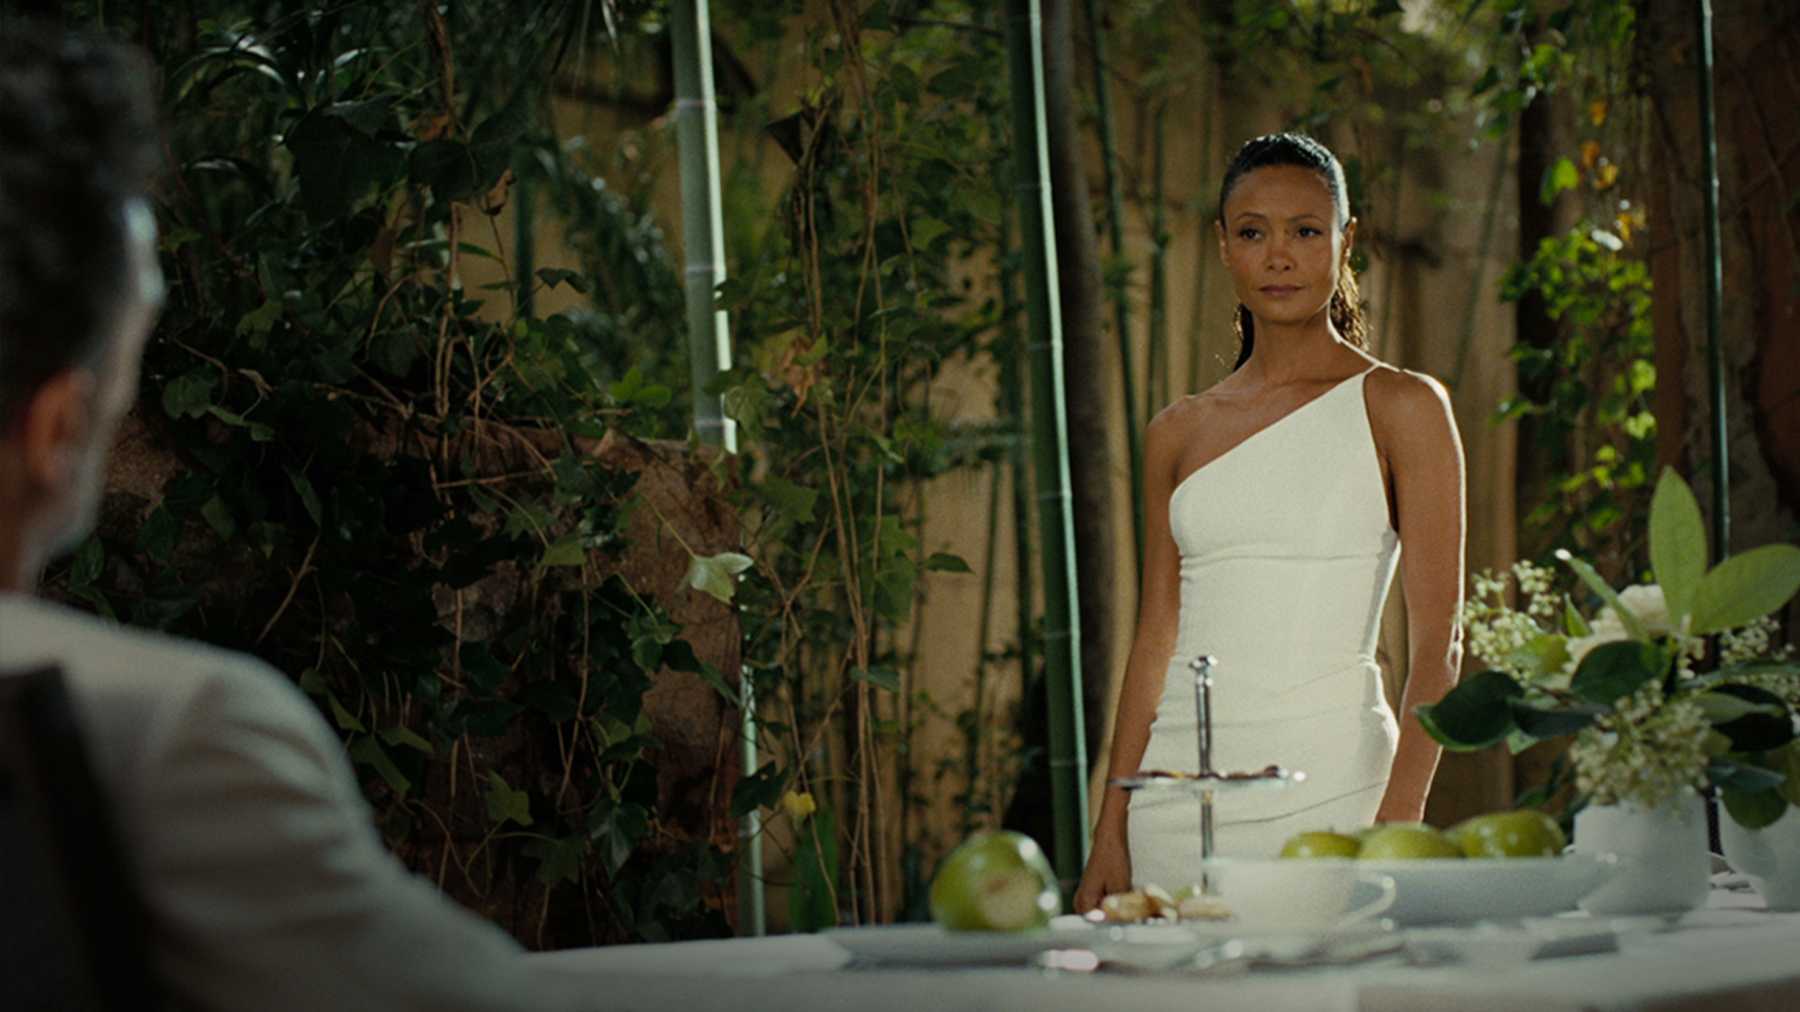 Thandie Newton usa um vestido branco e olha para um homem na mesa de jantar. Ela é uma mulher negra, de cabelo preso e um olhar desafiador. Ao seu redor, vemos muitas plantas